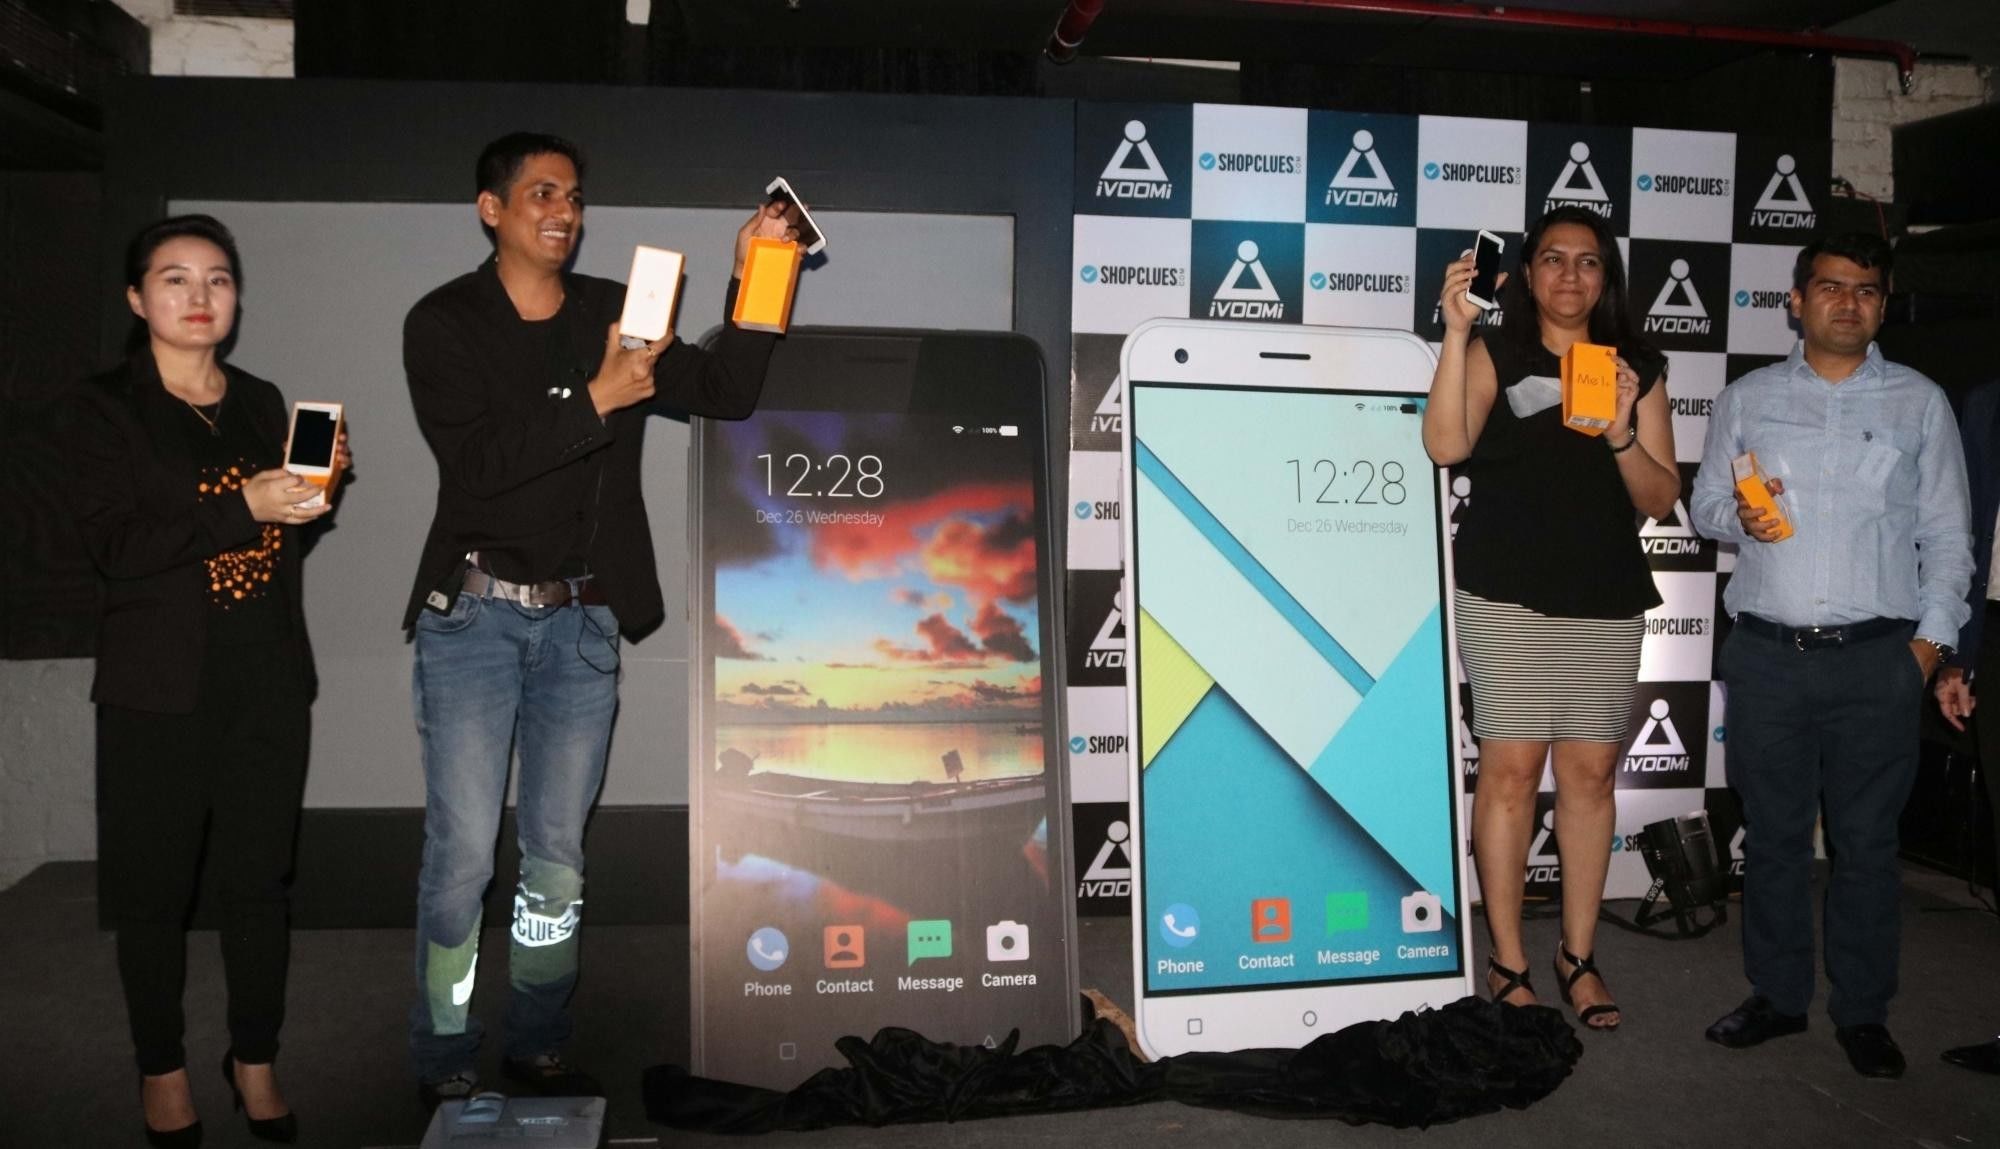 आईवूमी ने भारतीय बाजार में उतारे दो सस्ते स्मार्टफोन